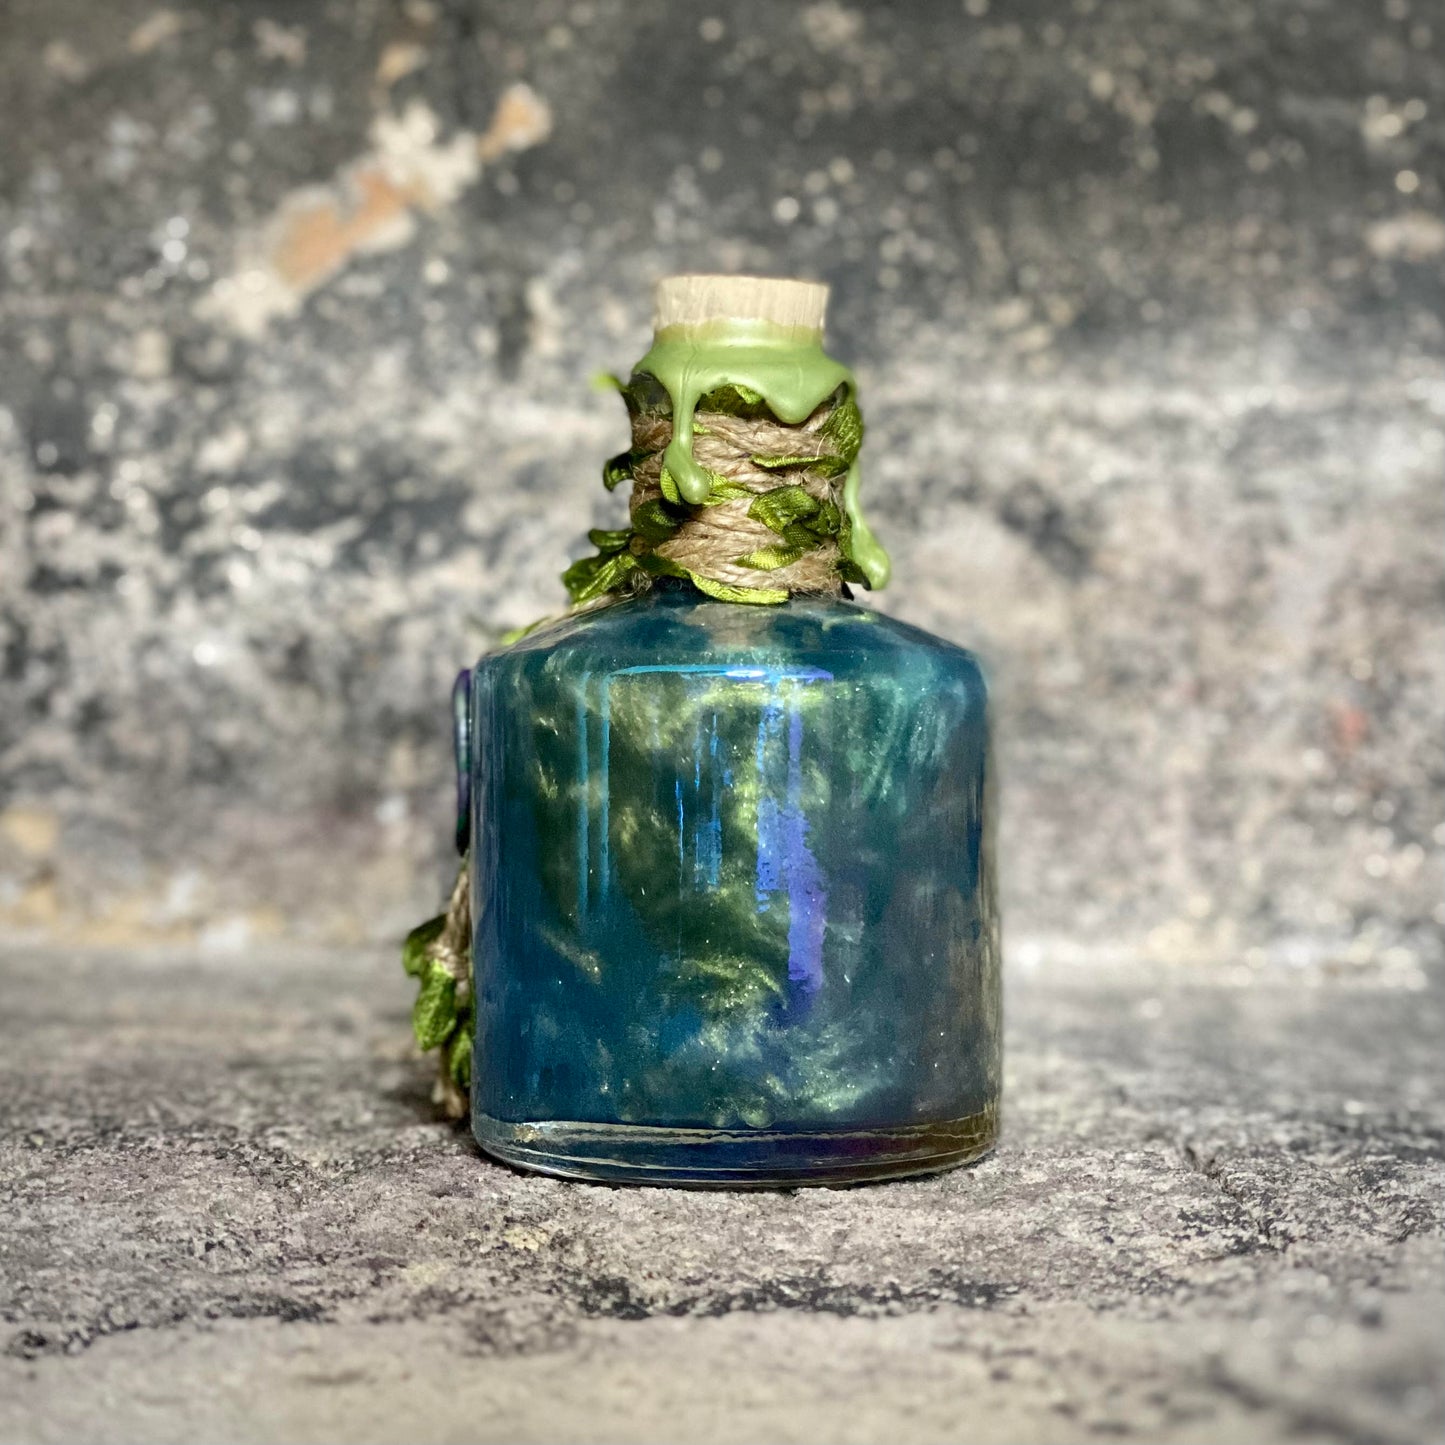 Eldritch Veil. A Fae, Iridescent, Color Change Decorative Potion Bottle